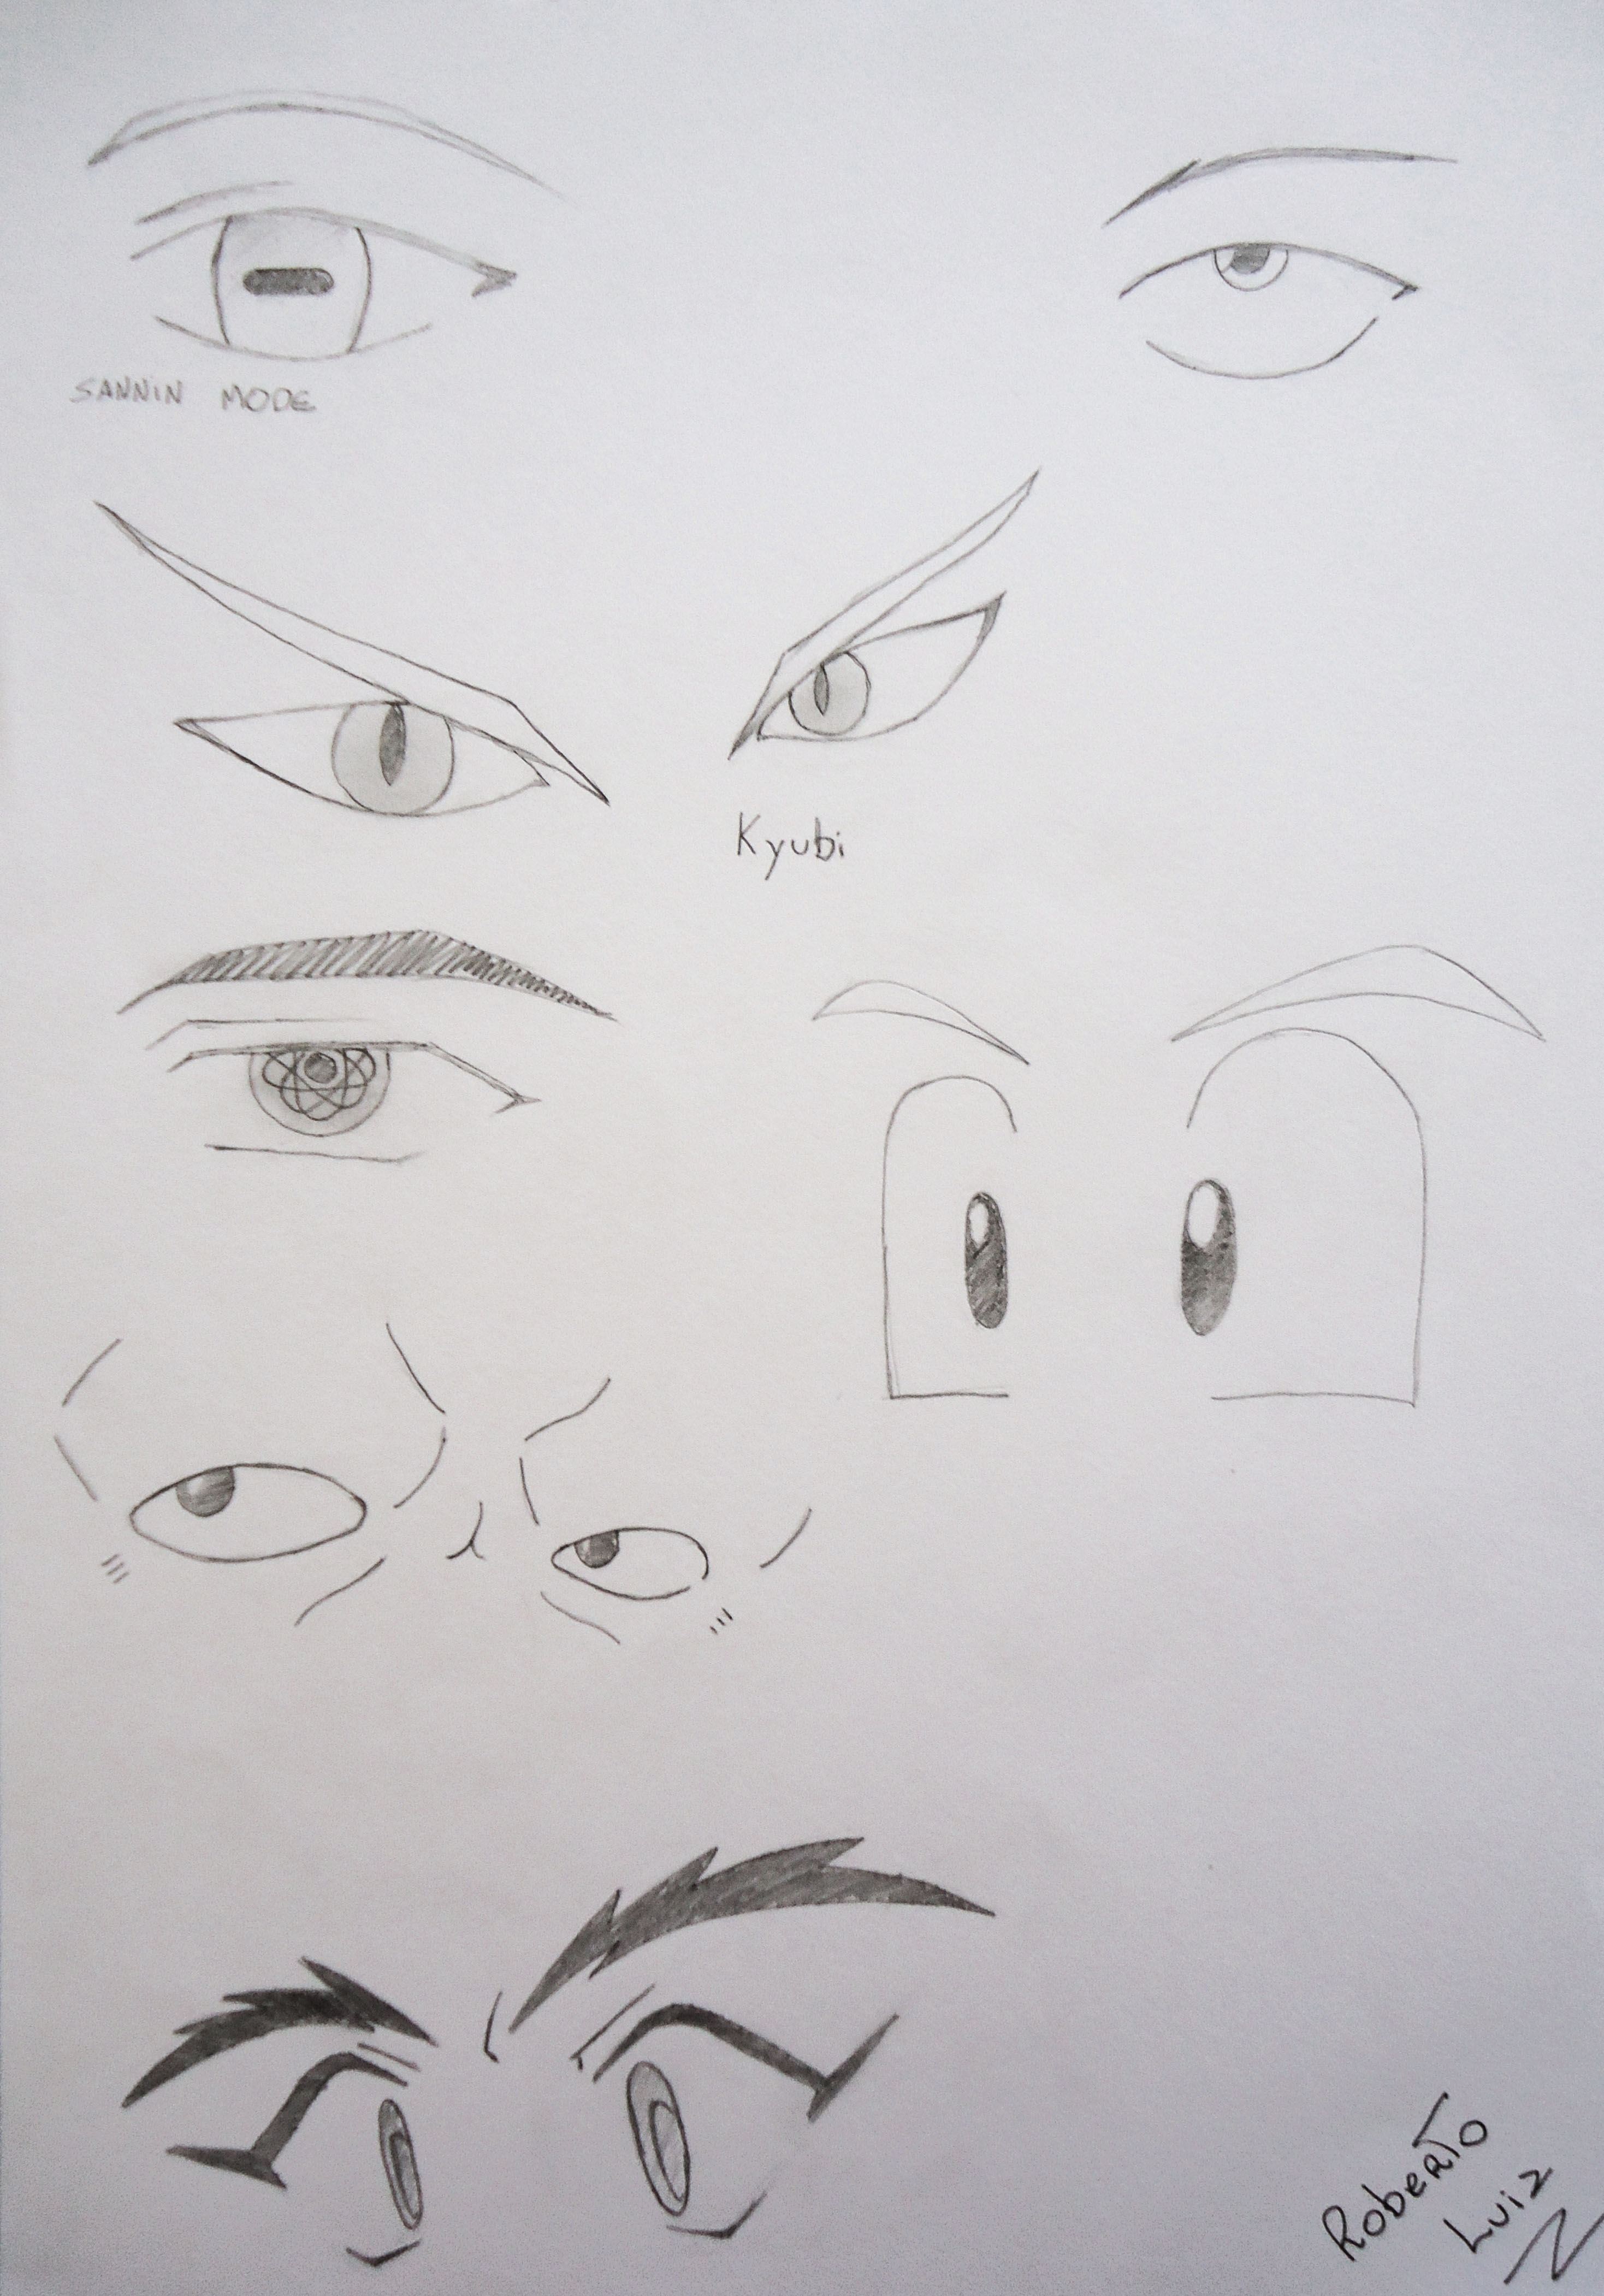 Olhos masculinos